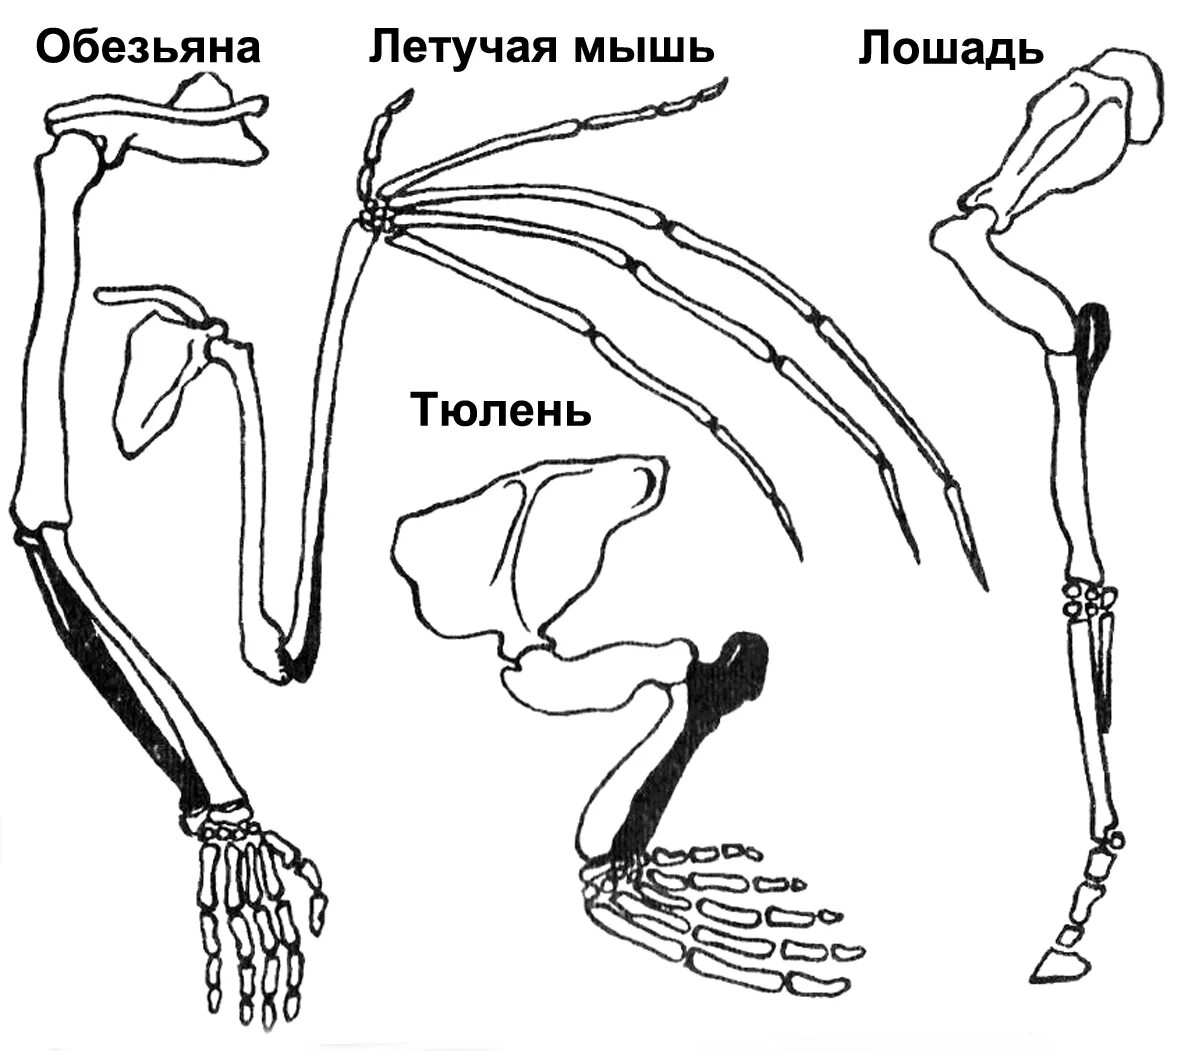 Скелет пояса задних конечностей млекопитающих. Пояс задних конечностей у млекопитающих. Строение задних конечностей млекопитающих. Строение скелета верхней конечности позвоночных животных.